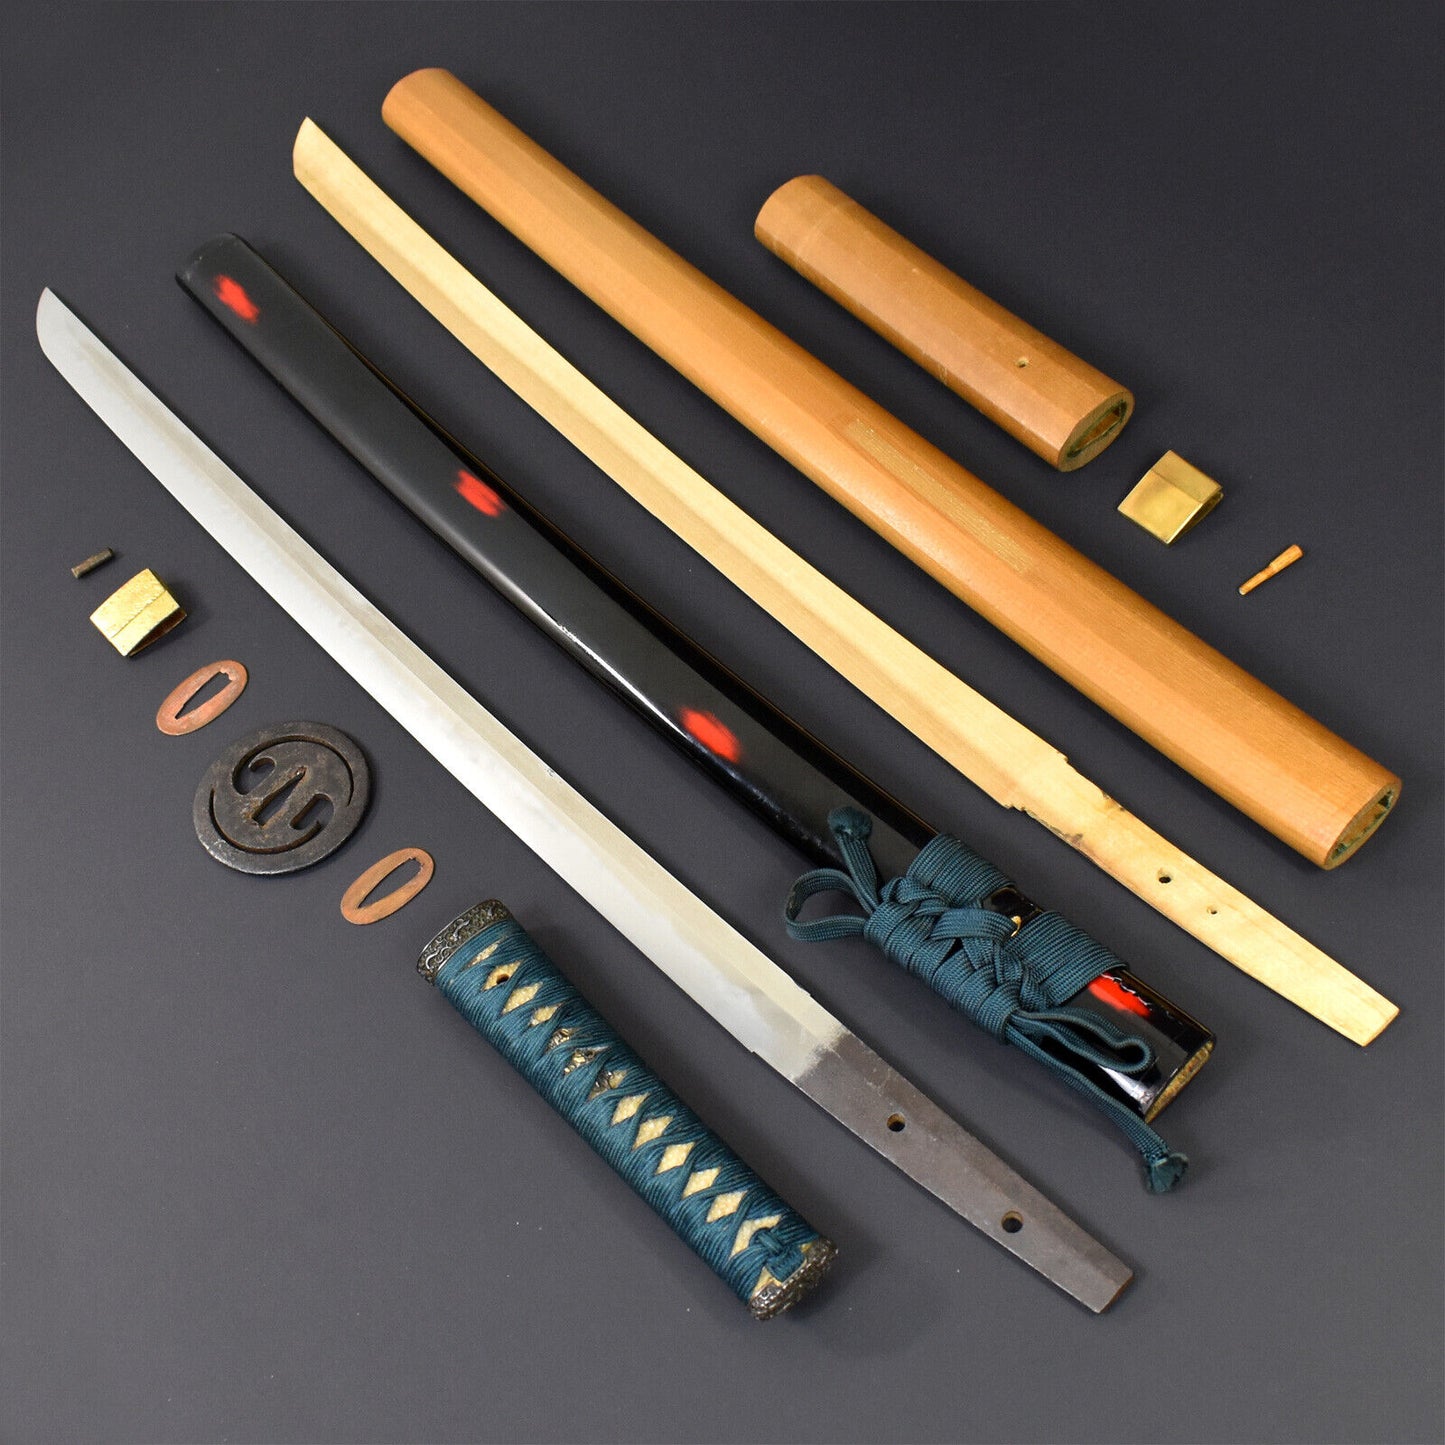 Authentic Antique Edo Era Japanese Katana Samurai Sword Wakizashi Echizen Seki Weapon Tamahagane.